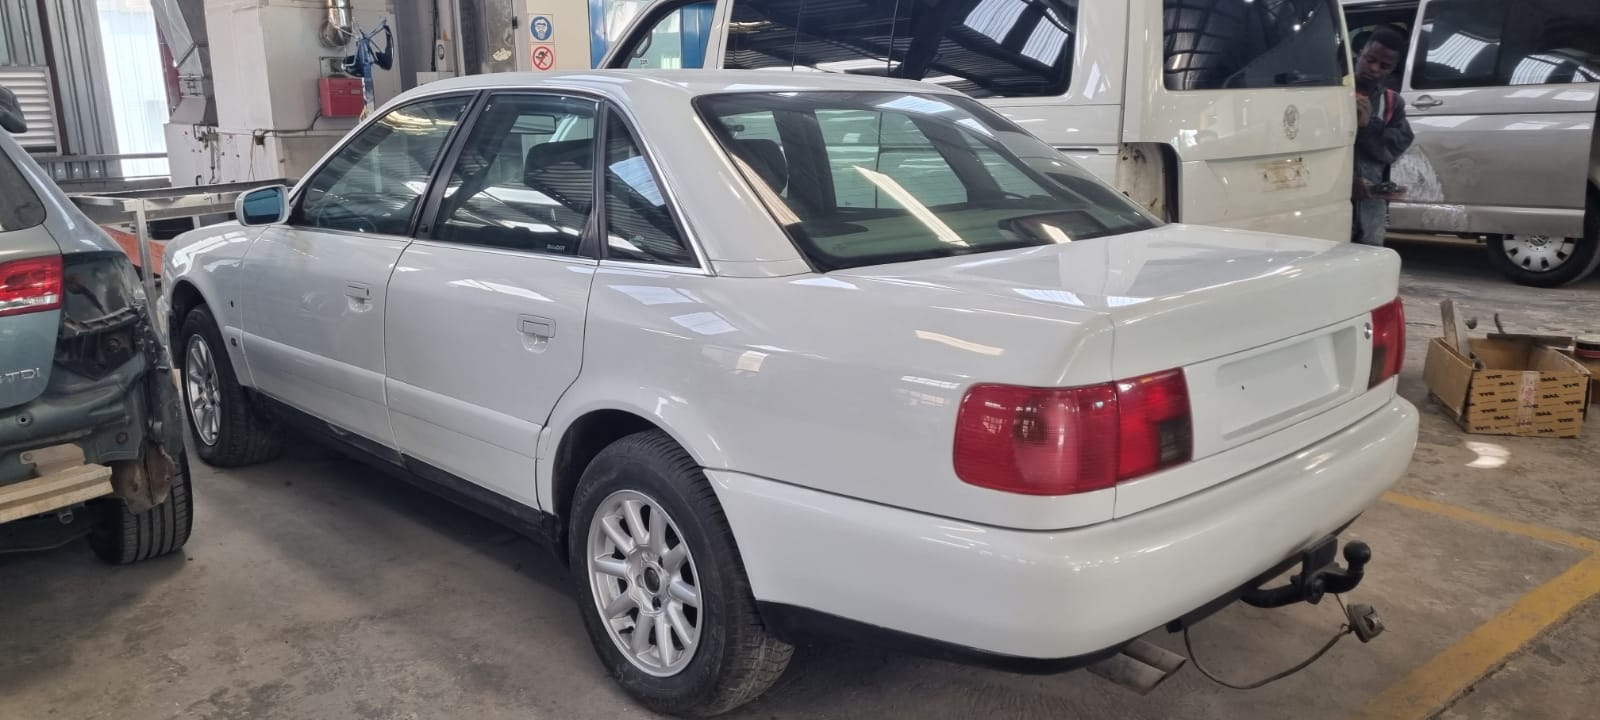 A6 2.6 V6 1995 Audi